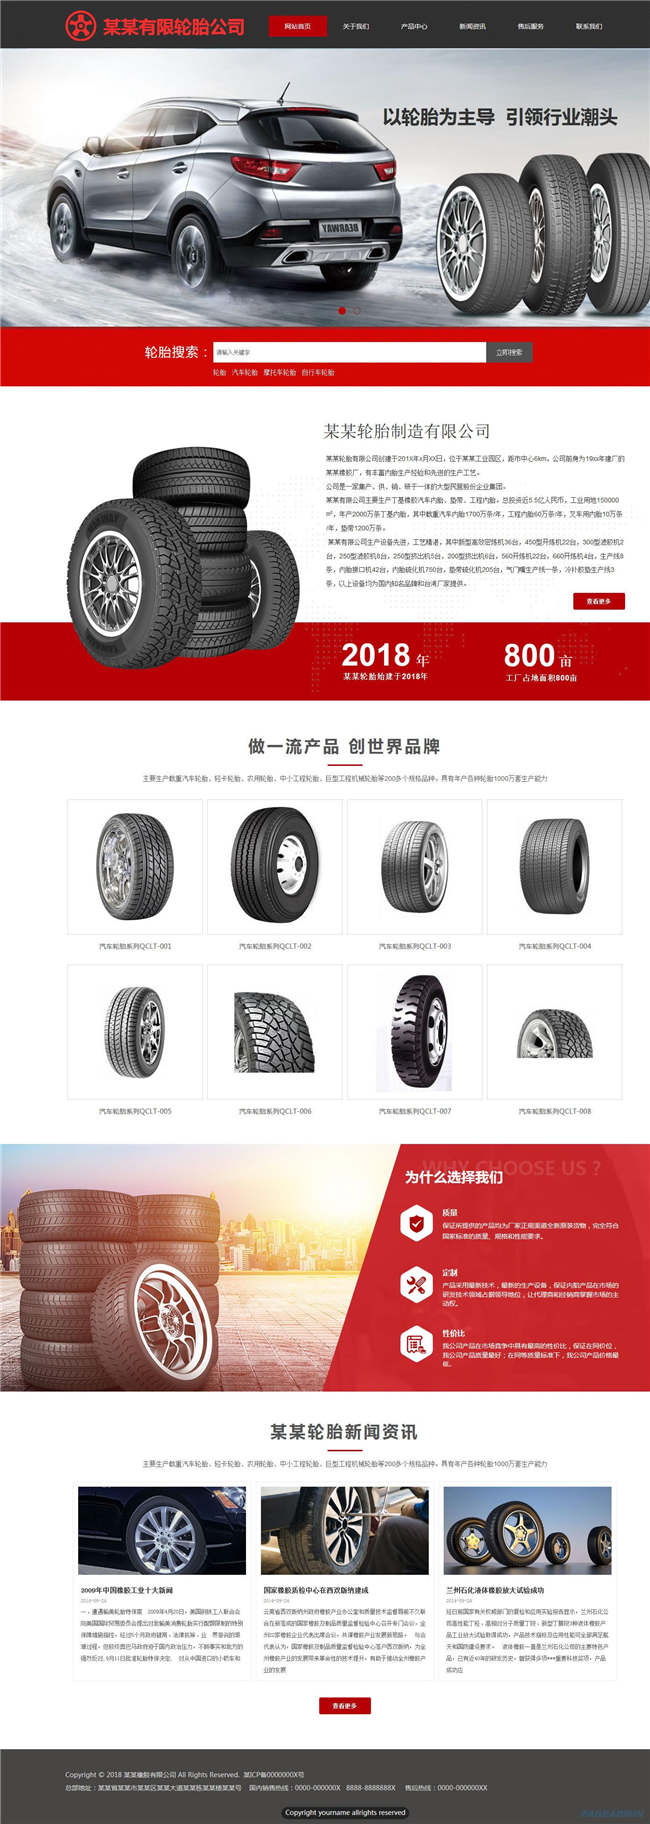 汽车轮胎公司汽车汽配服务轮胎网站WP整站模板(含手机版)预览图